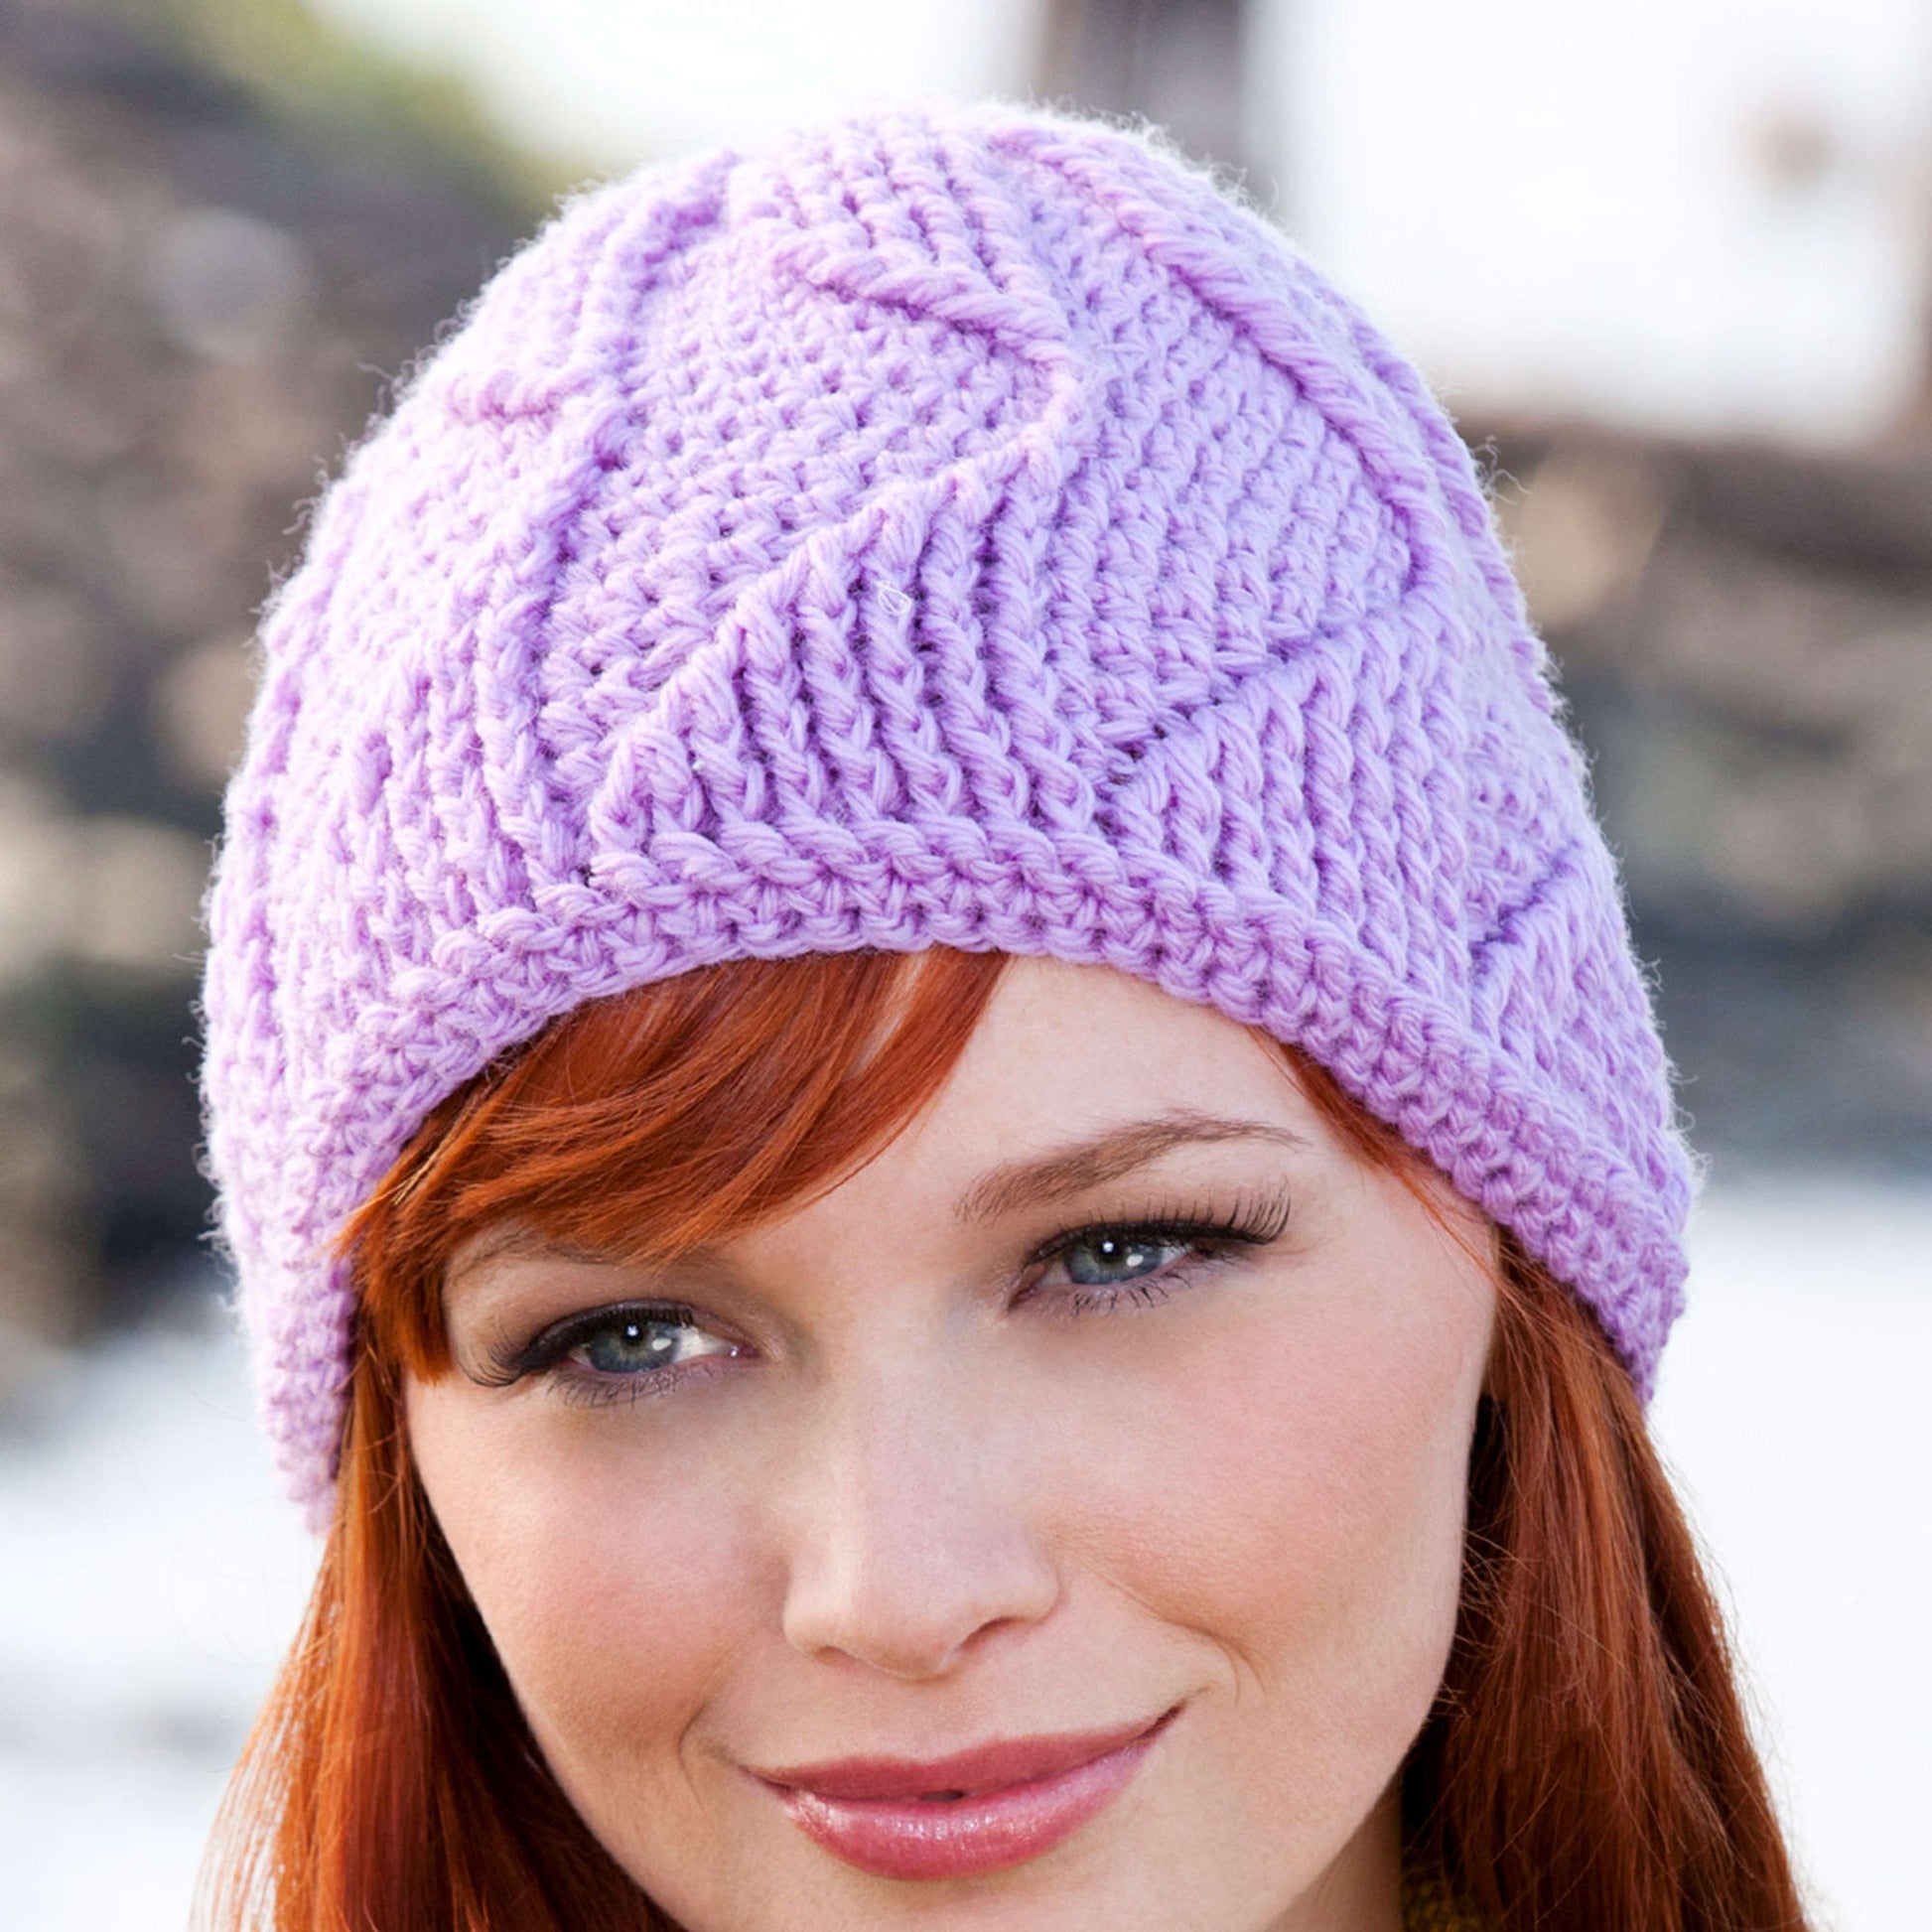 Free Red Heart Crochet Waves-A-Head Hat Pattern